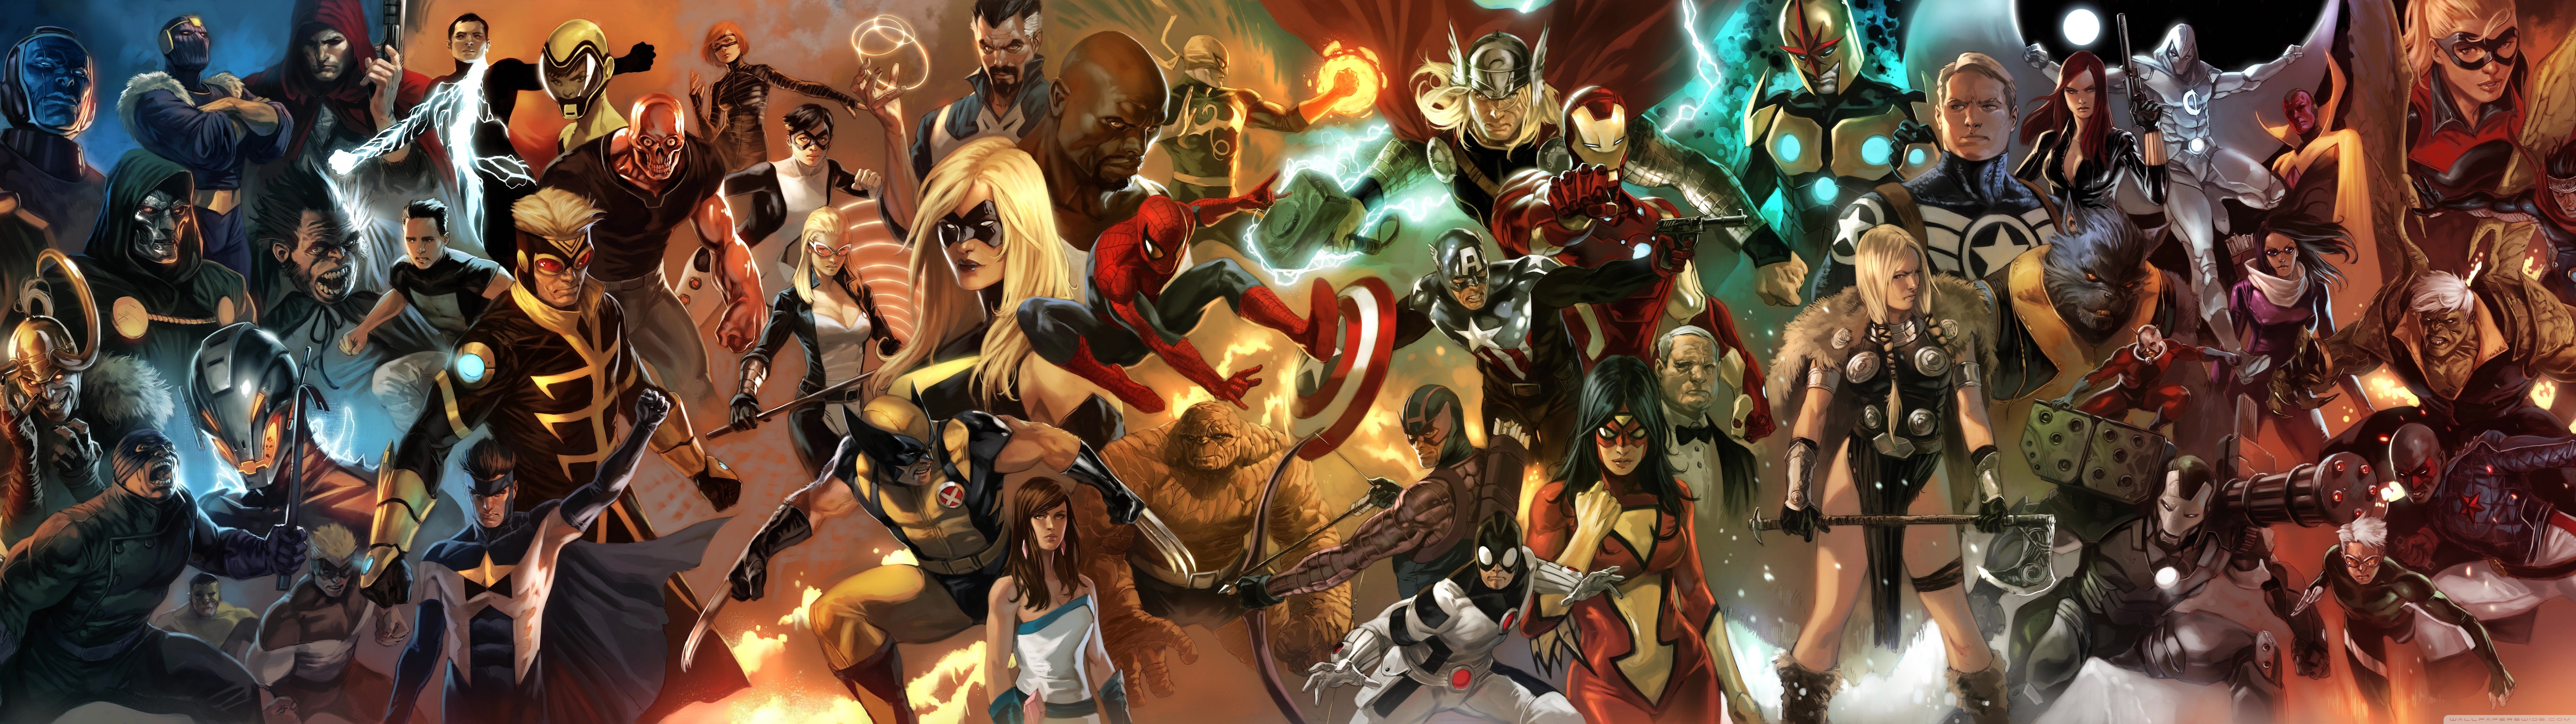 Marvel Ics Characters Wallpaper